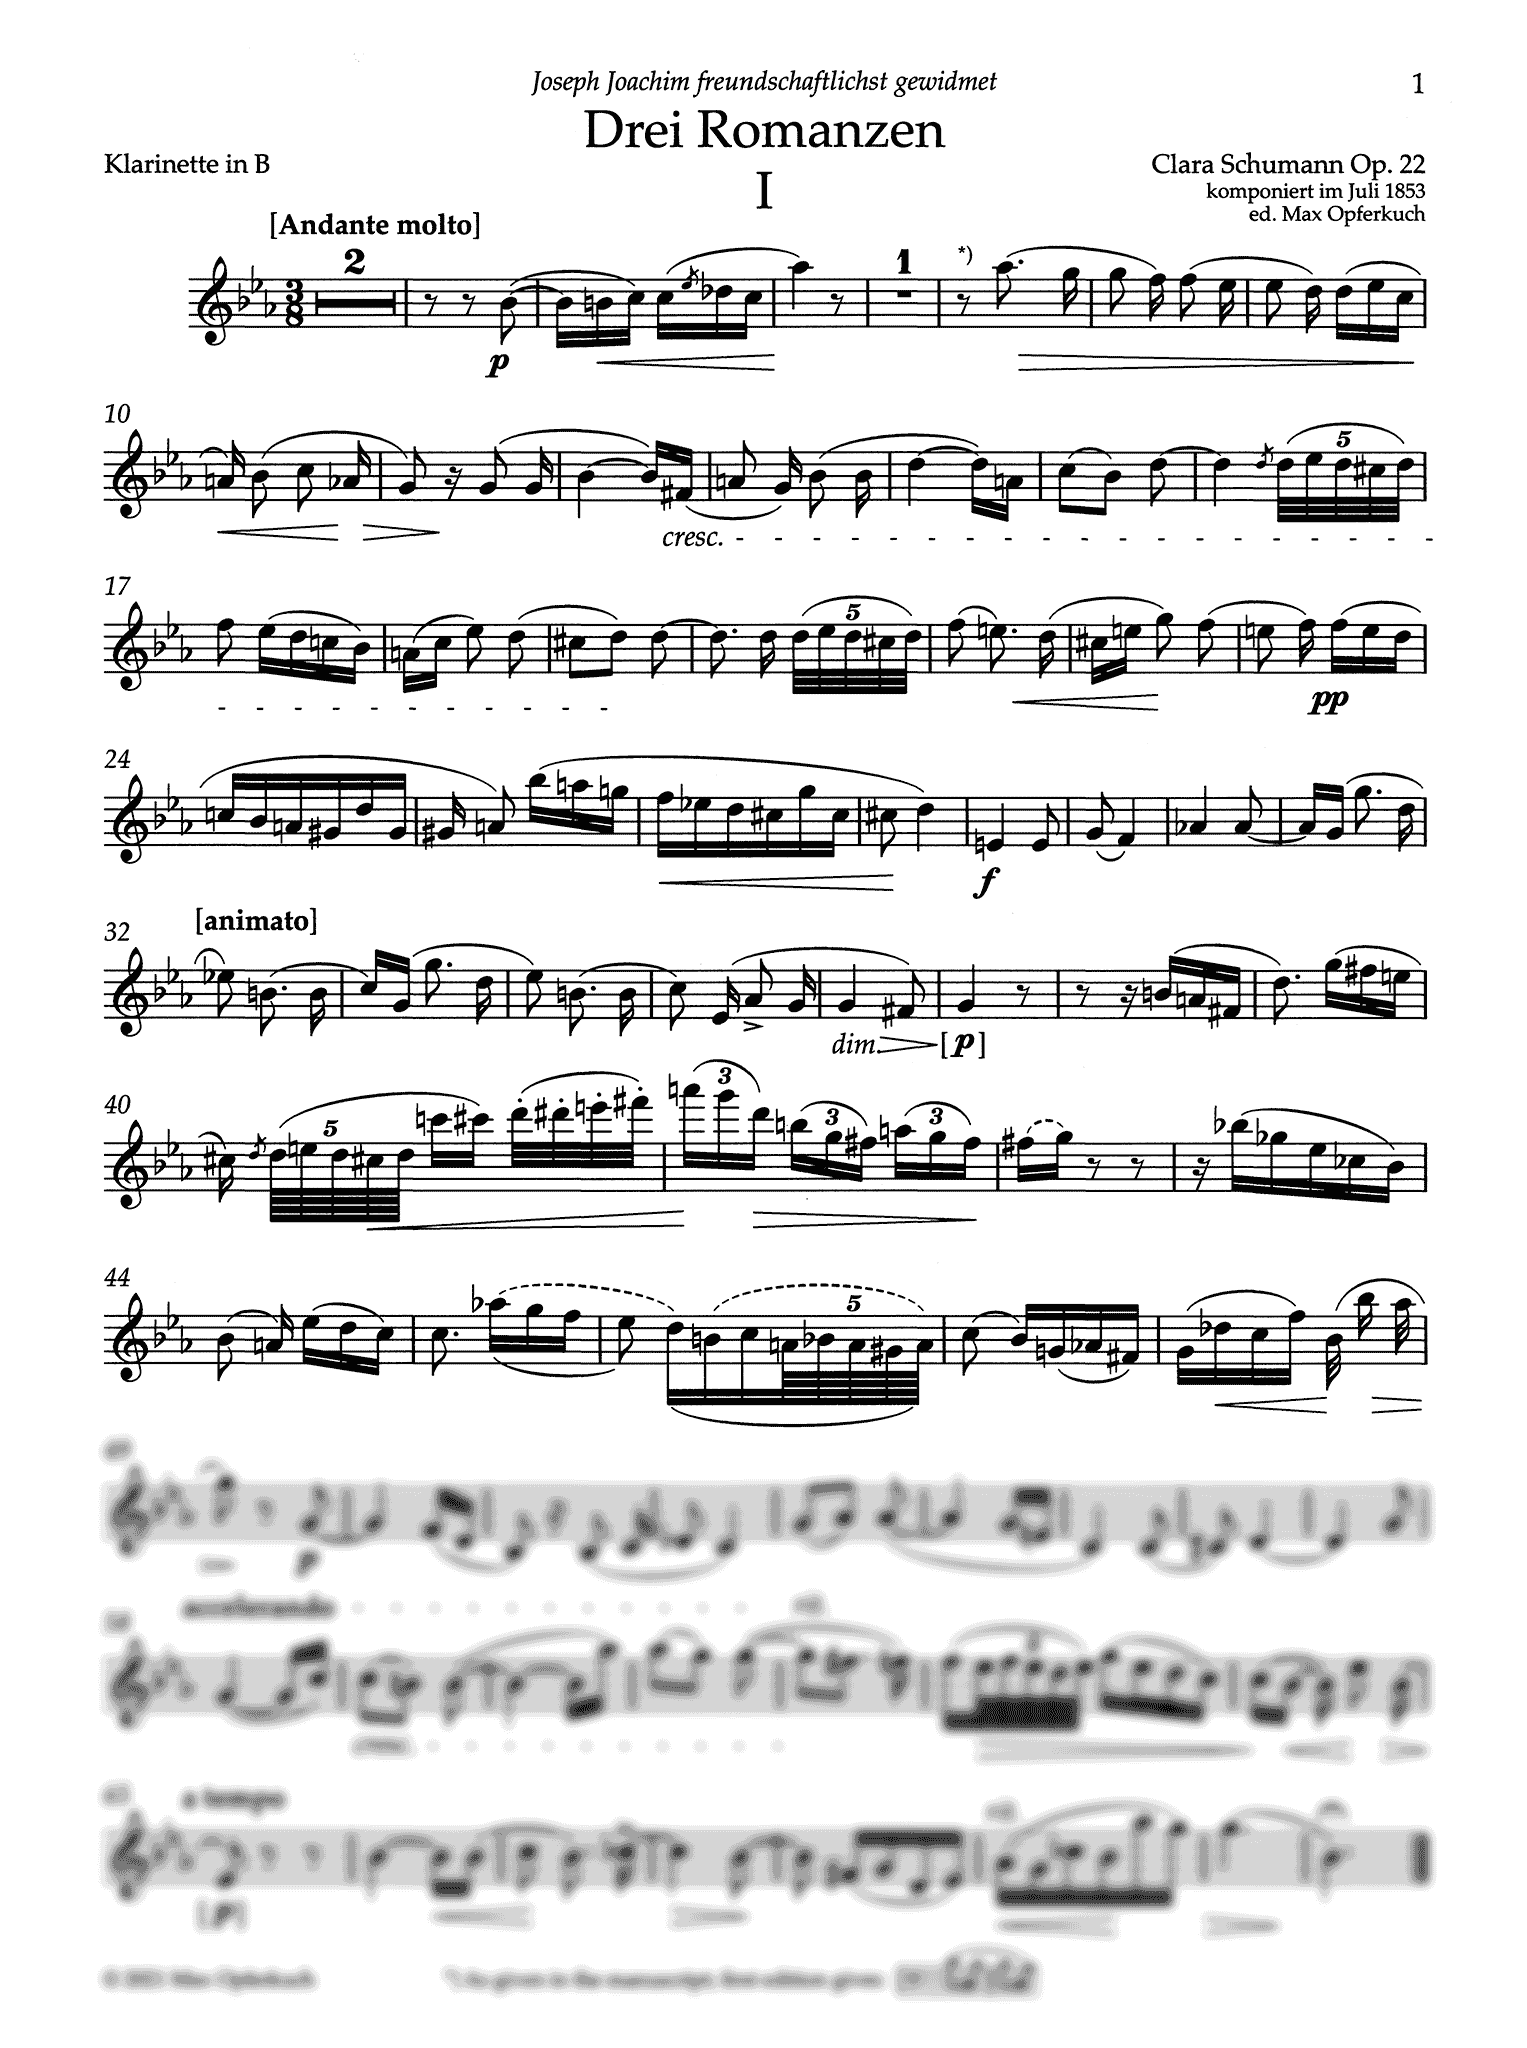 Clara Schumann Drei Romanzen, Op. 22 clarinet part